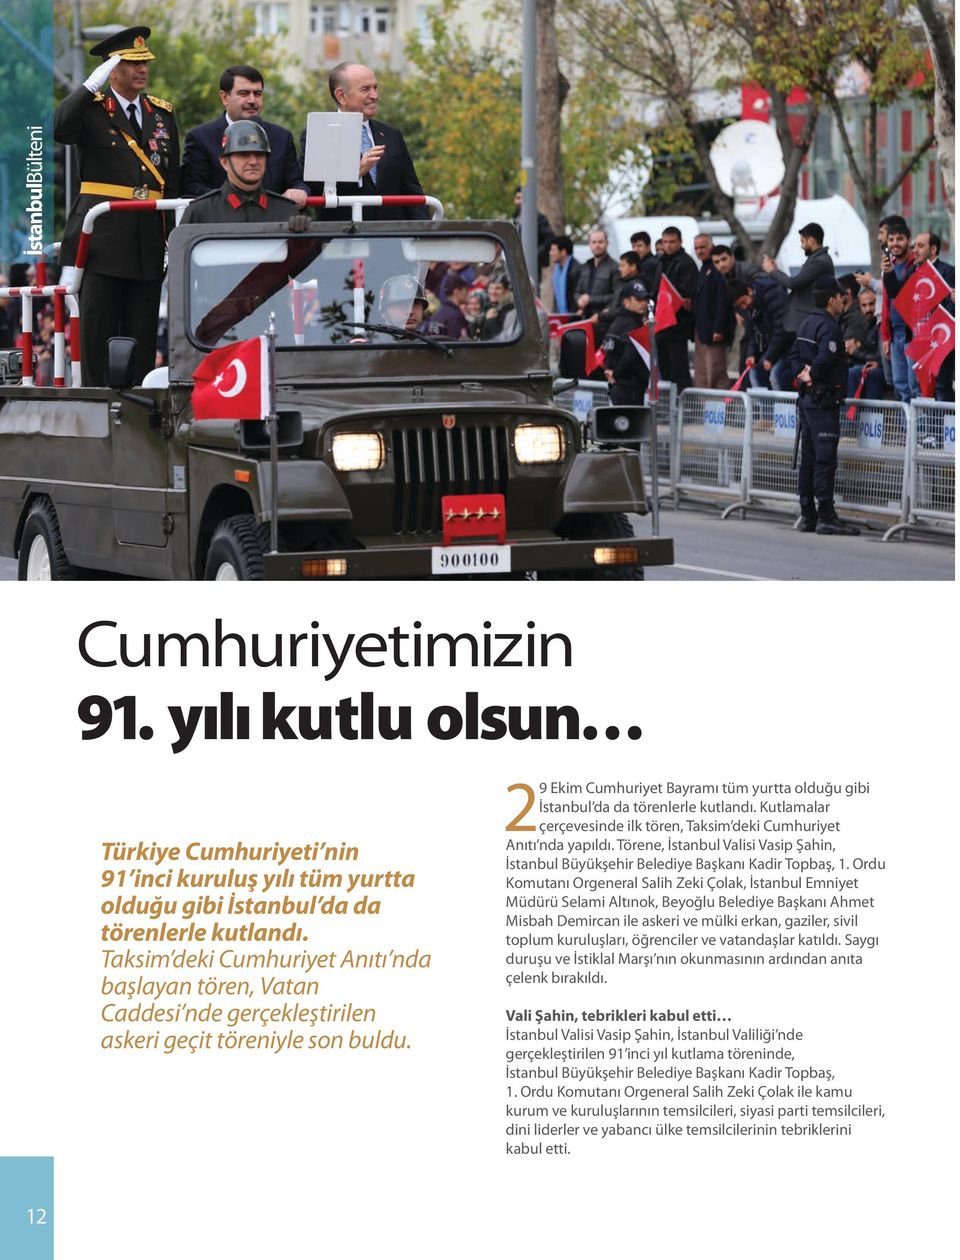 29 Ekim Cumhuriyet Bayramı tüm yurtta olduğu gibi İstanbul da da törenlerle kutlandı. Kutlamalar çerçevesinde ilk tören, Taksim deki Cumhuriyet Anıtı nda yapıldı.